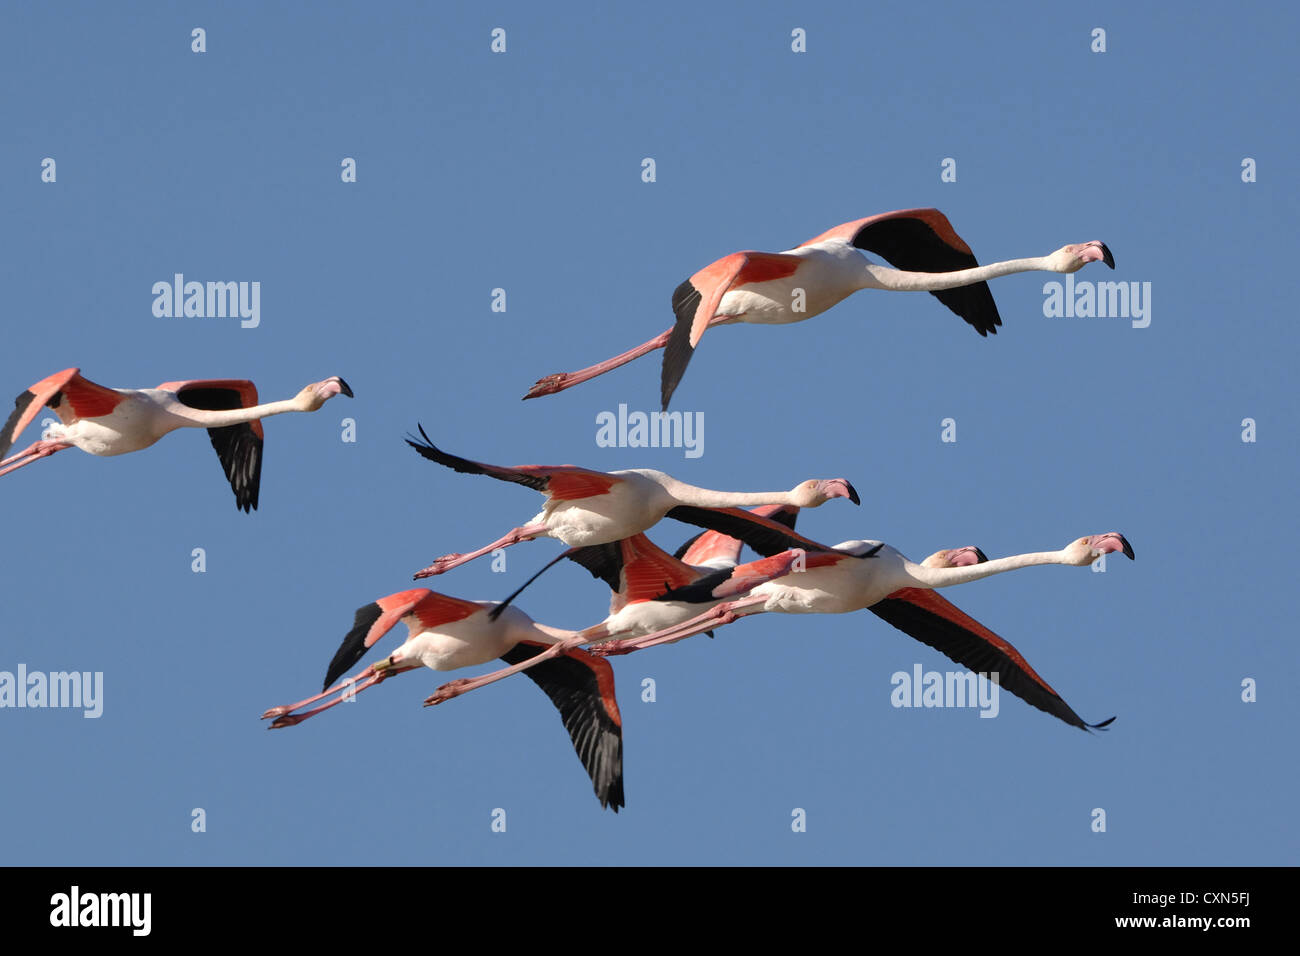 Mehr Flamingos im Formationsflug in den blauen Himmel der Camargue, Frankreich Stockfoto